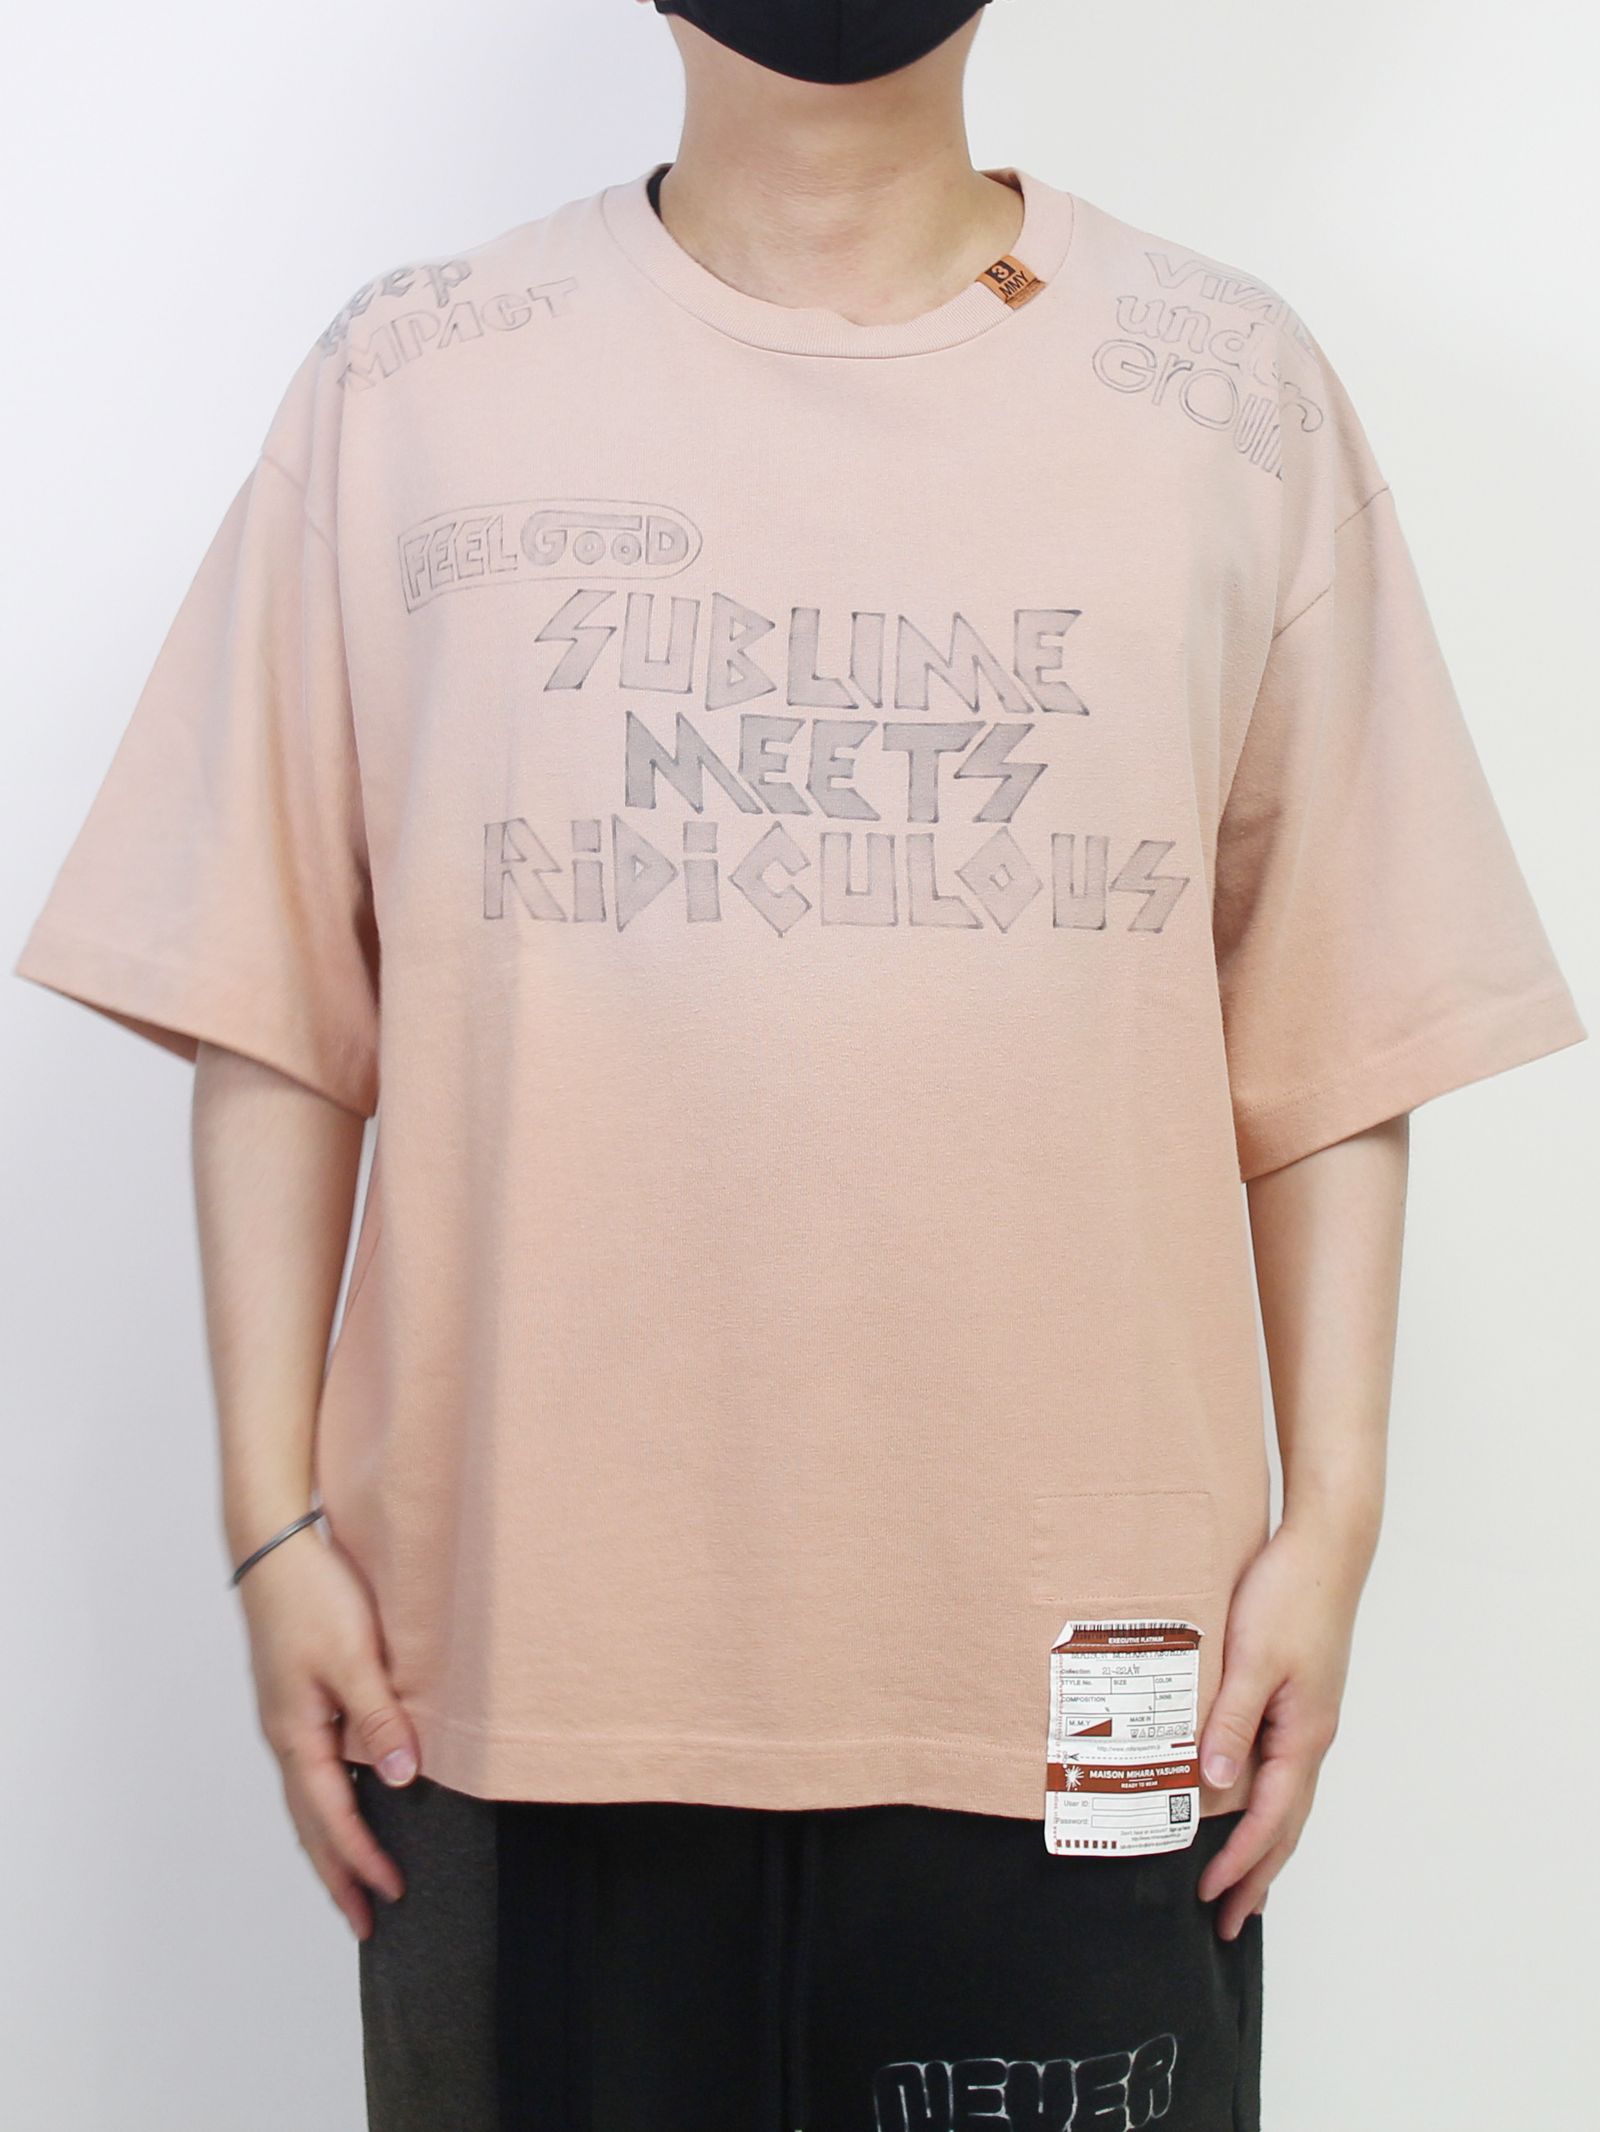 Maison MIHARA YASUHIRO - S.M.R Printed T-shirt - プリントTシャツ 